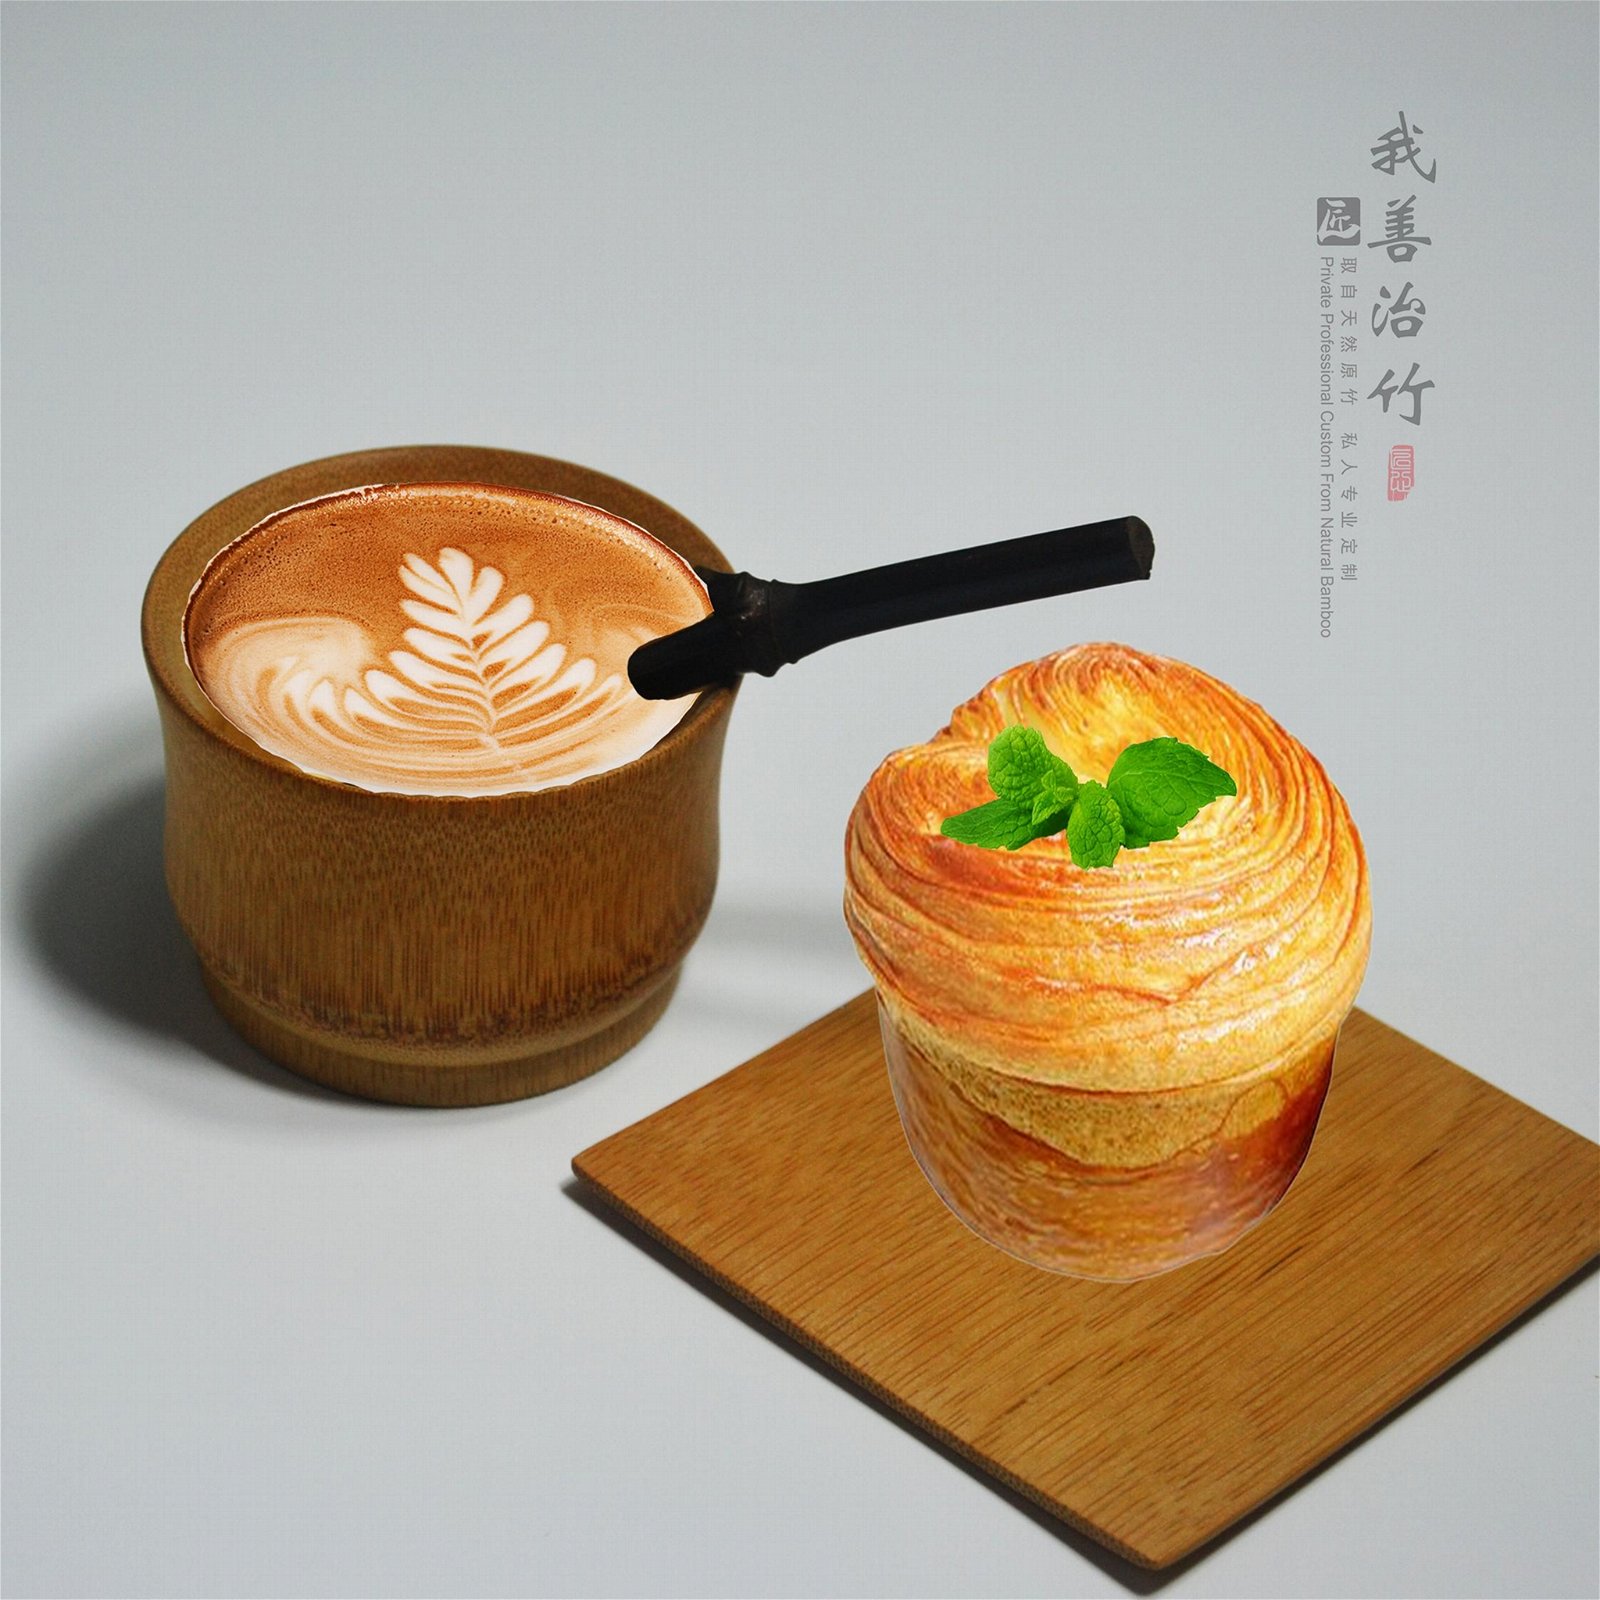 竹子咖啡杯竹质餐具竹制奶茶杯茶杯 4